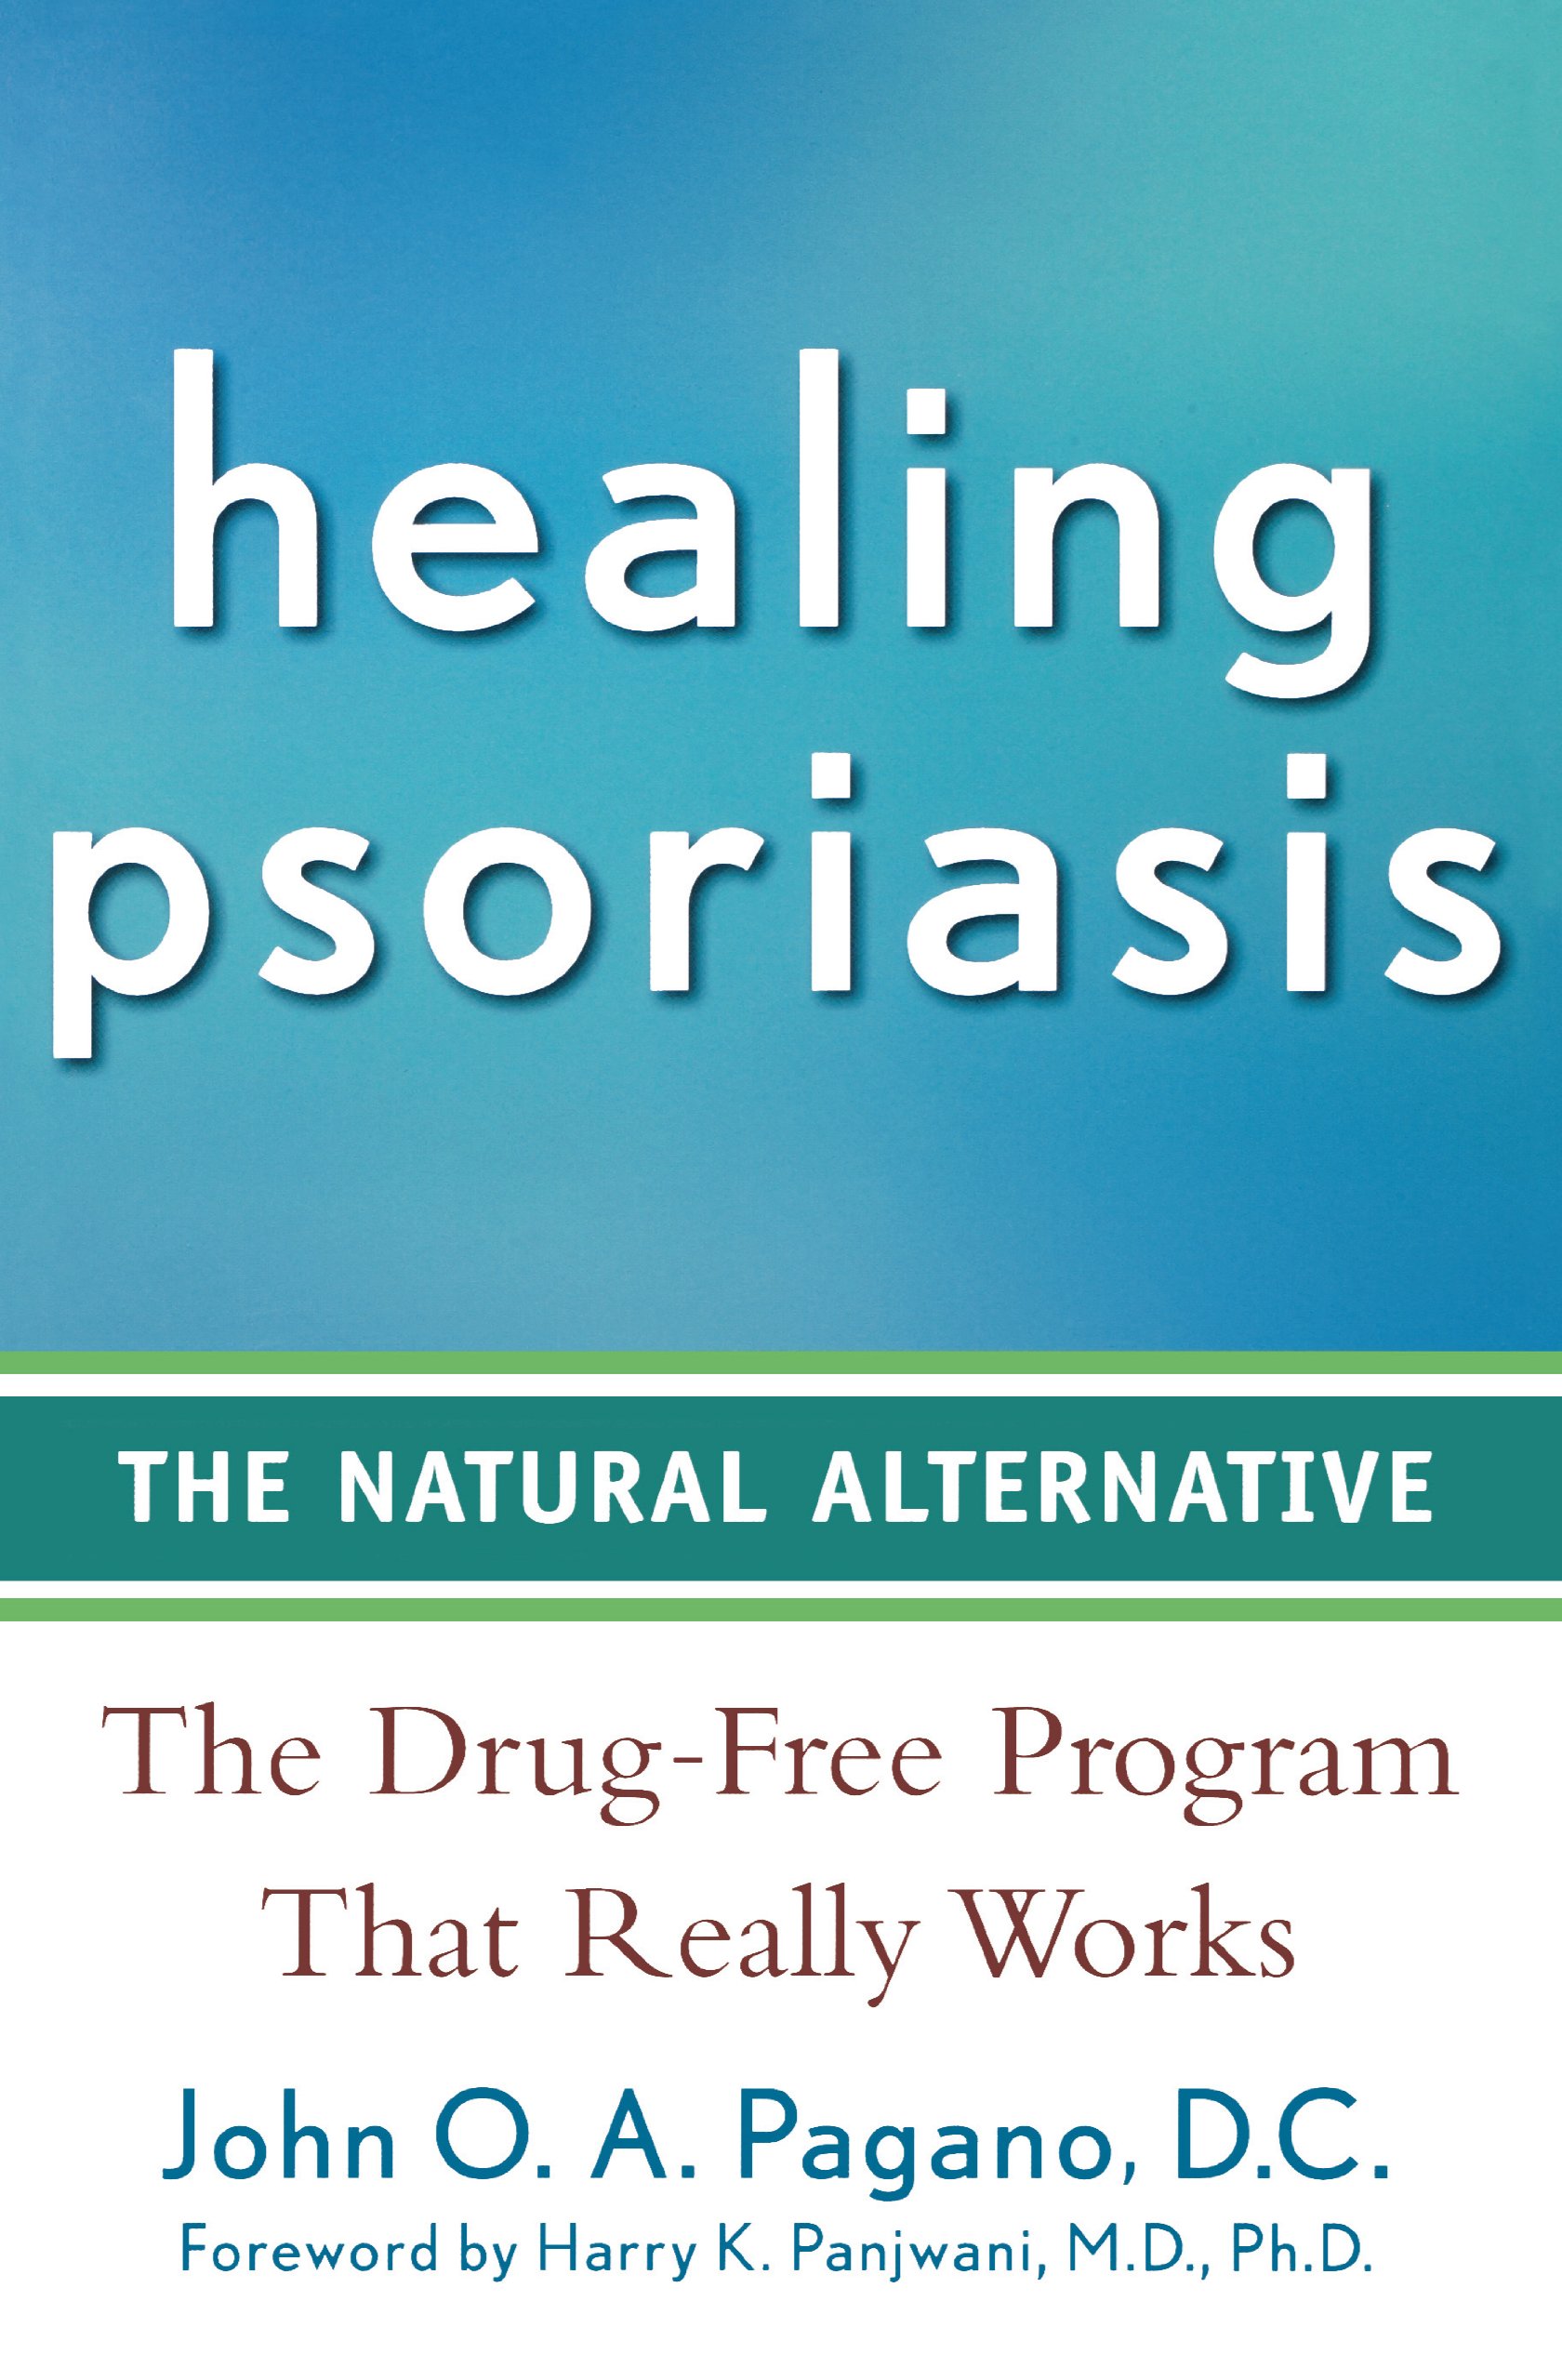 HEALING PSORIASIS